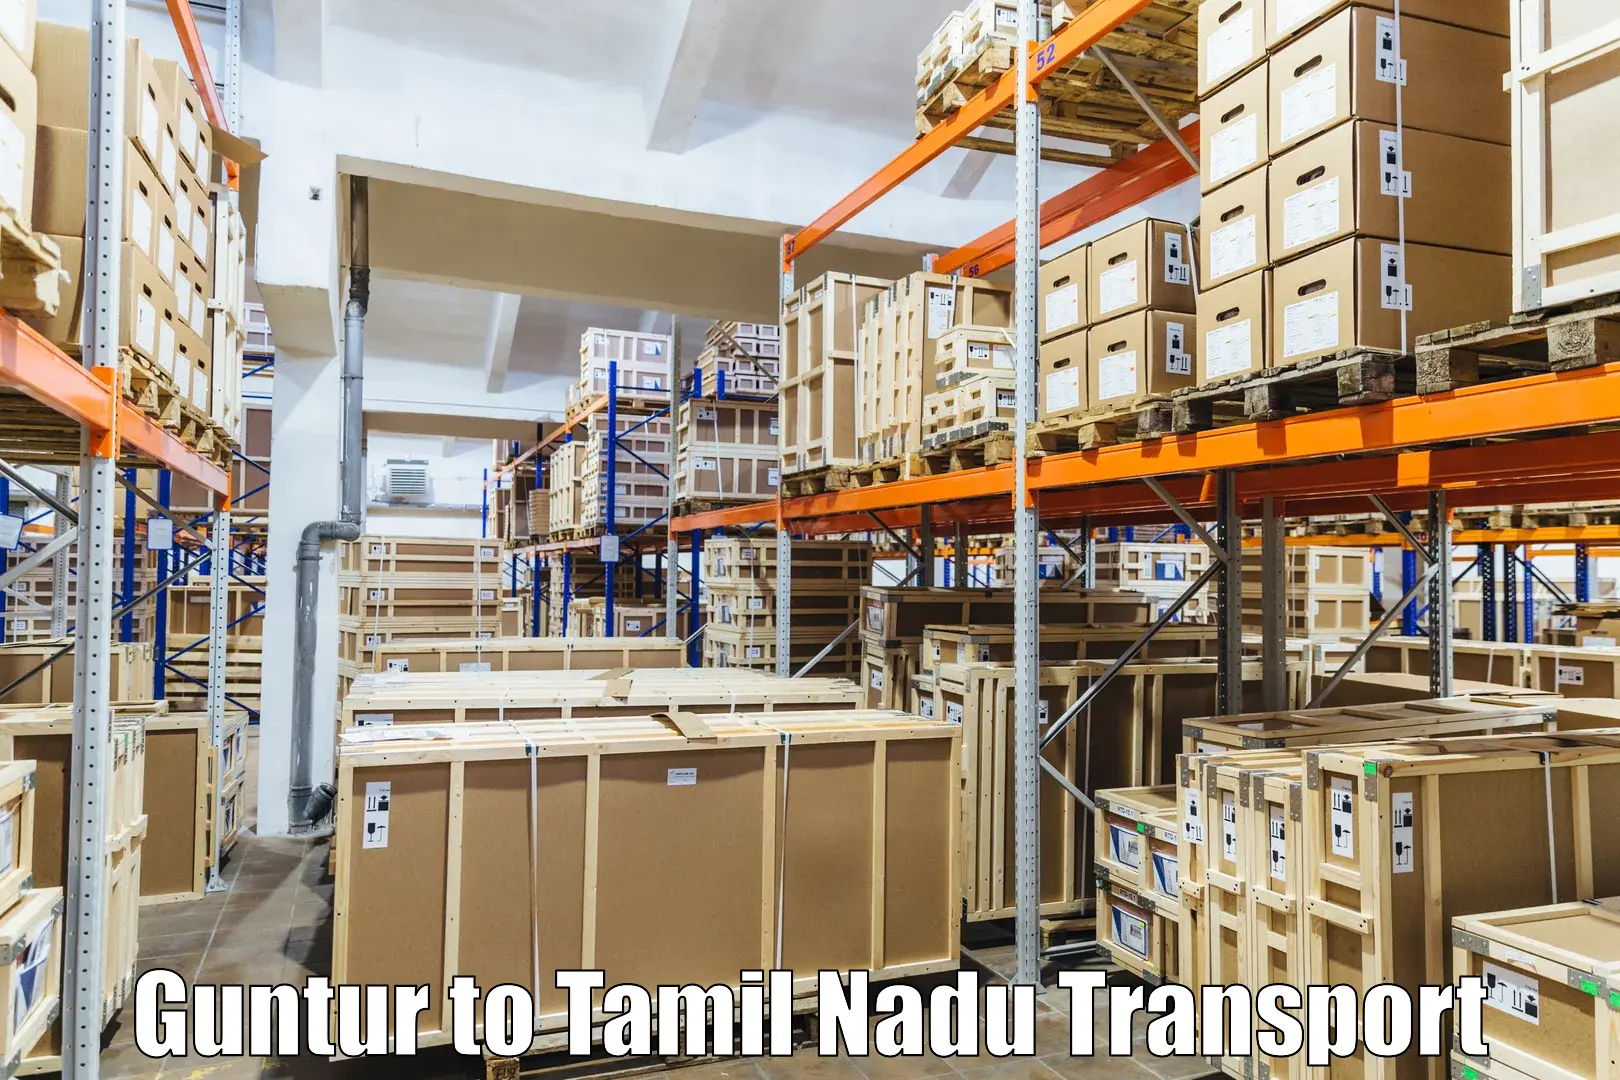 Nationwide transport services Guntur to Mettur